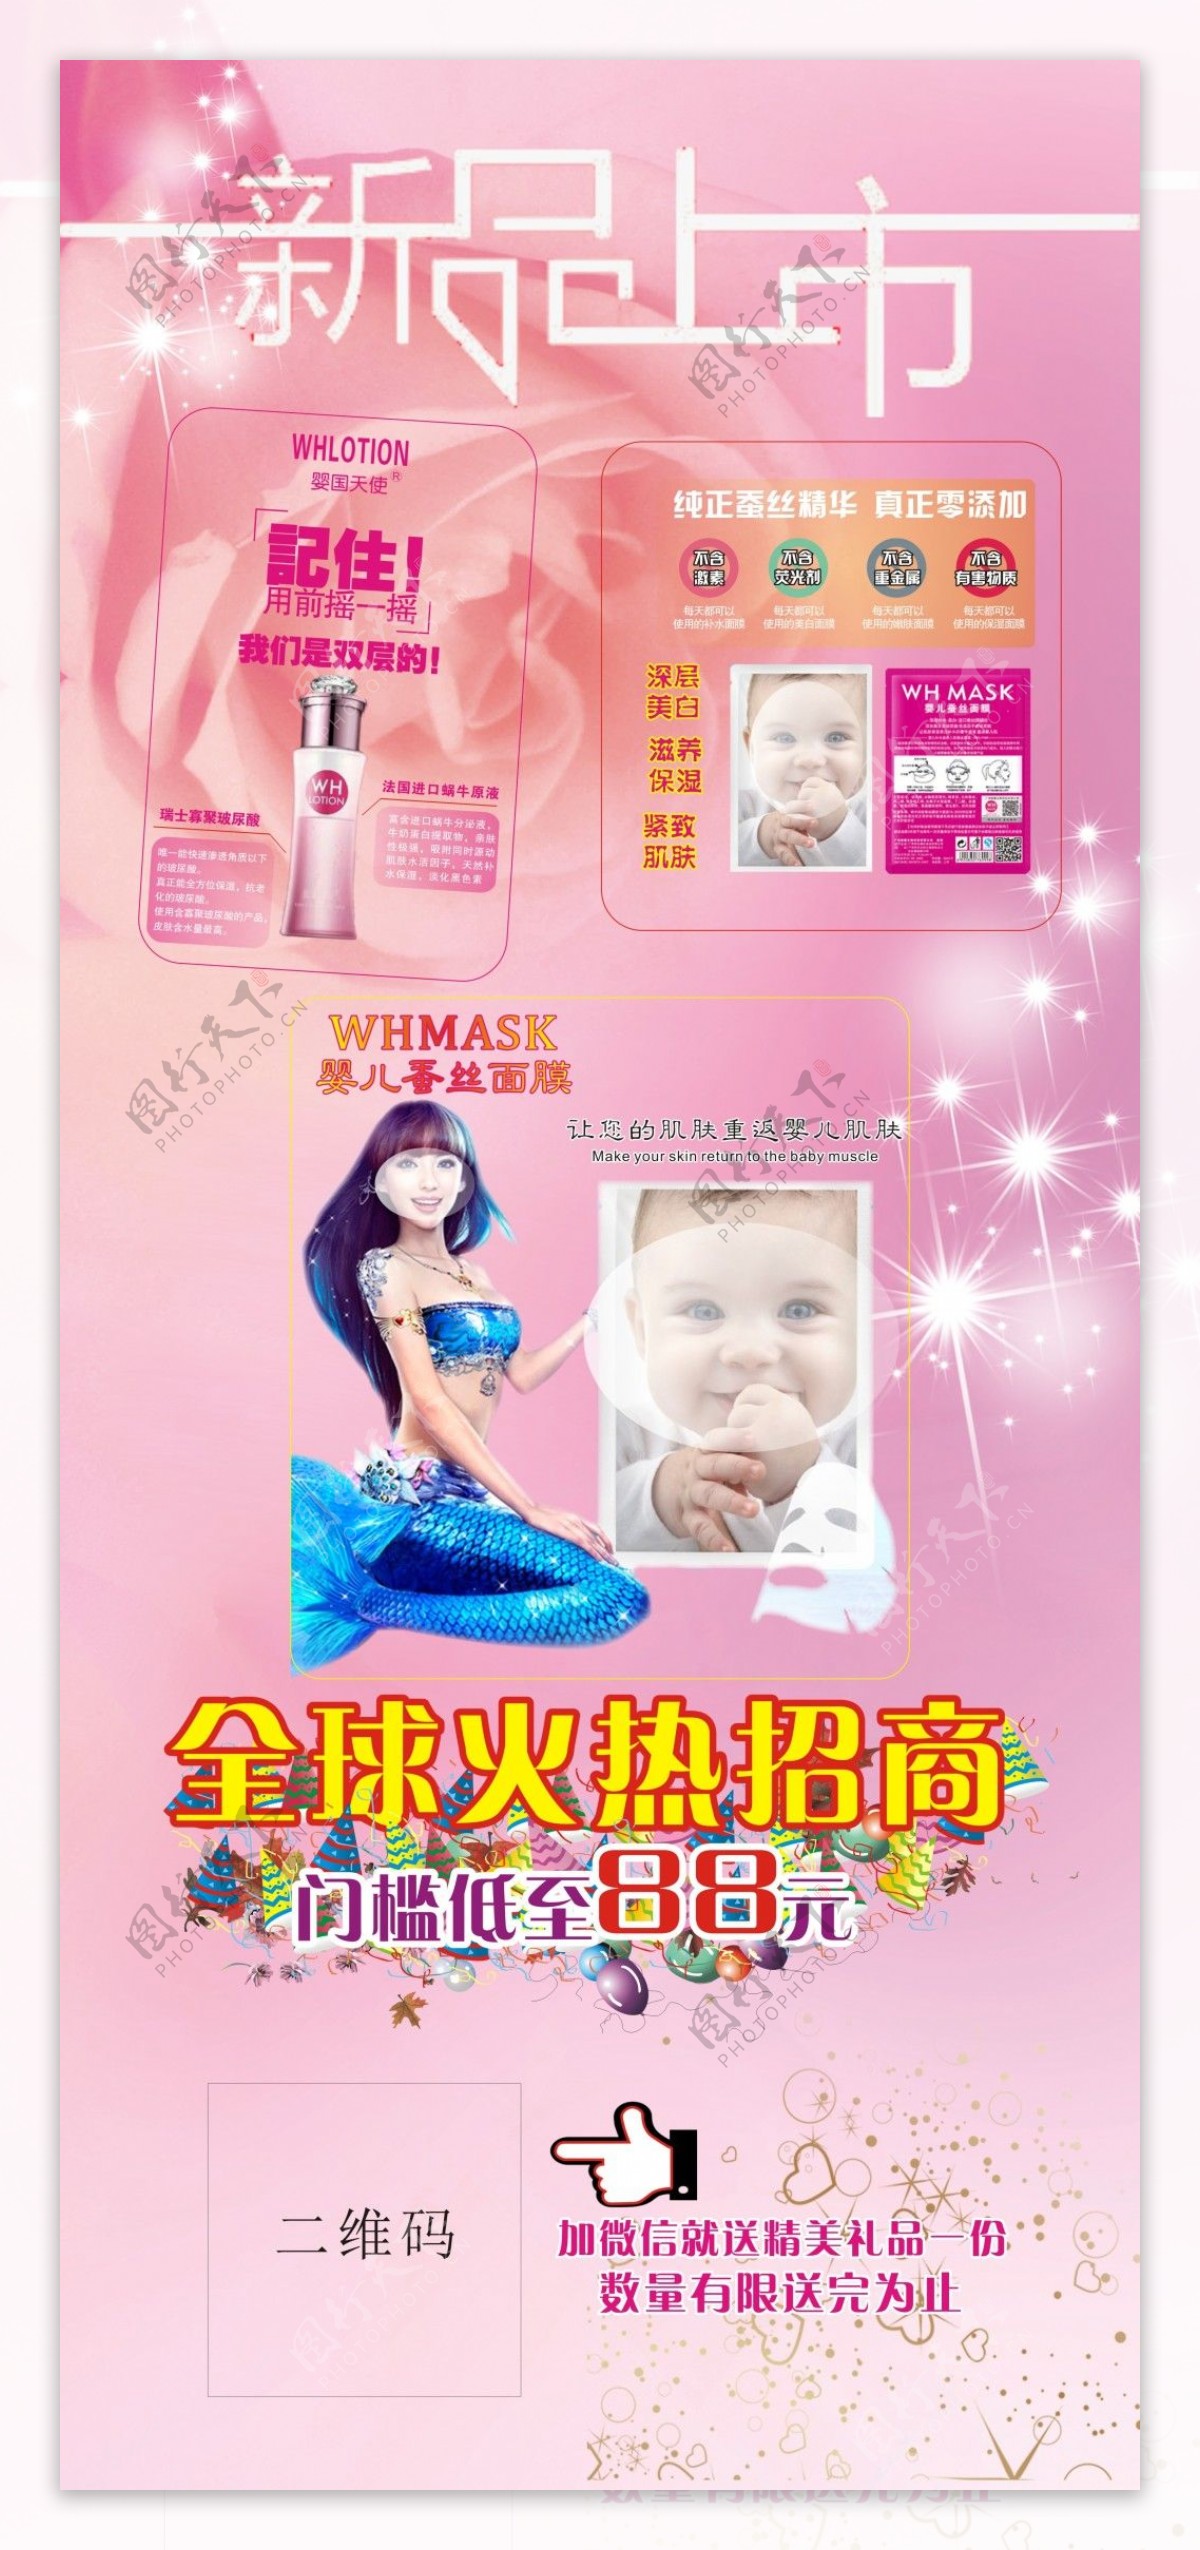 面膜化妆品护肤宝贝免费下载化妆品宝贝